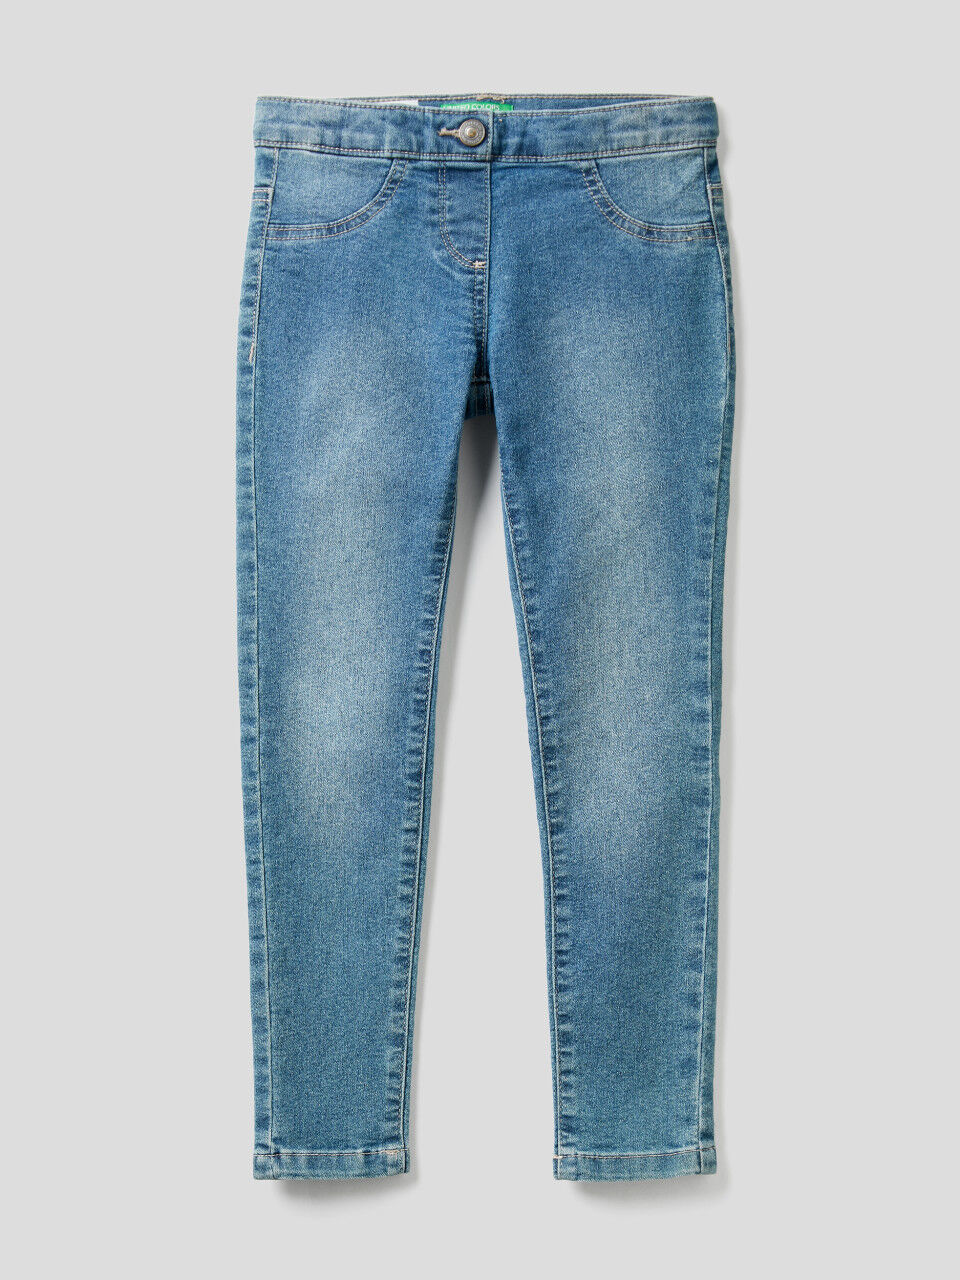 Buy Denim Jeans for Girls – Mumkins